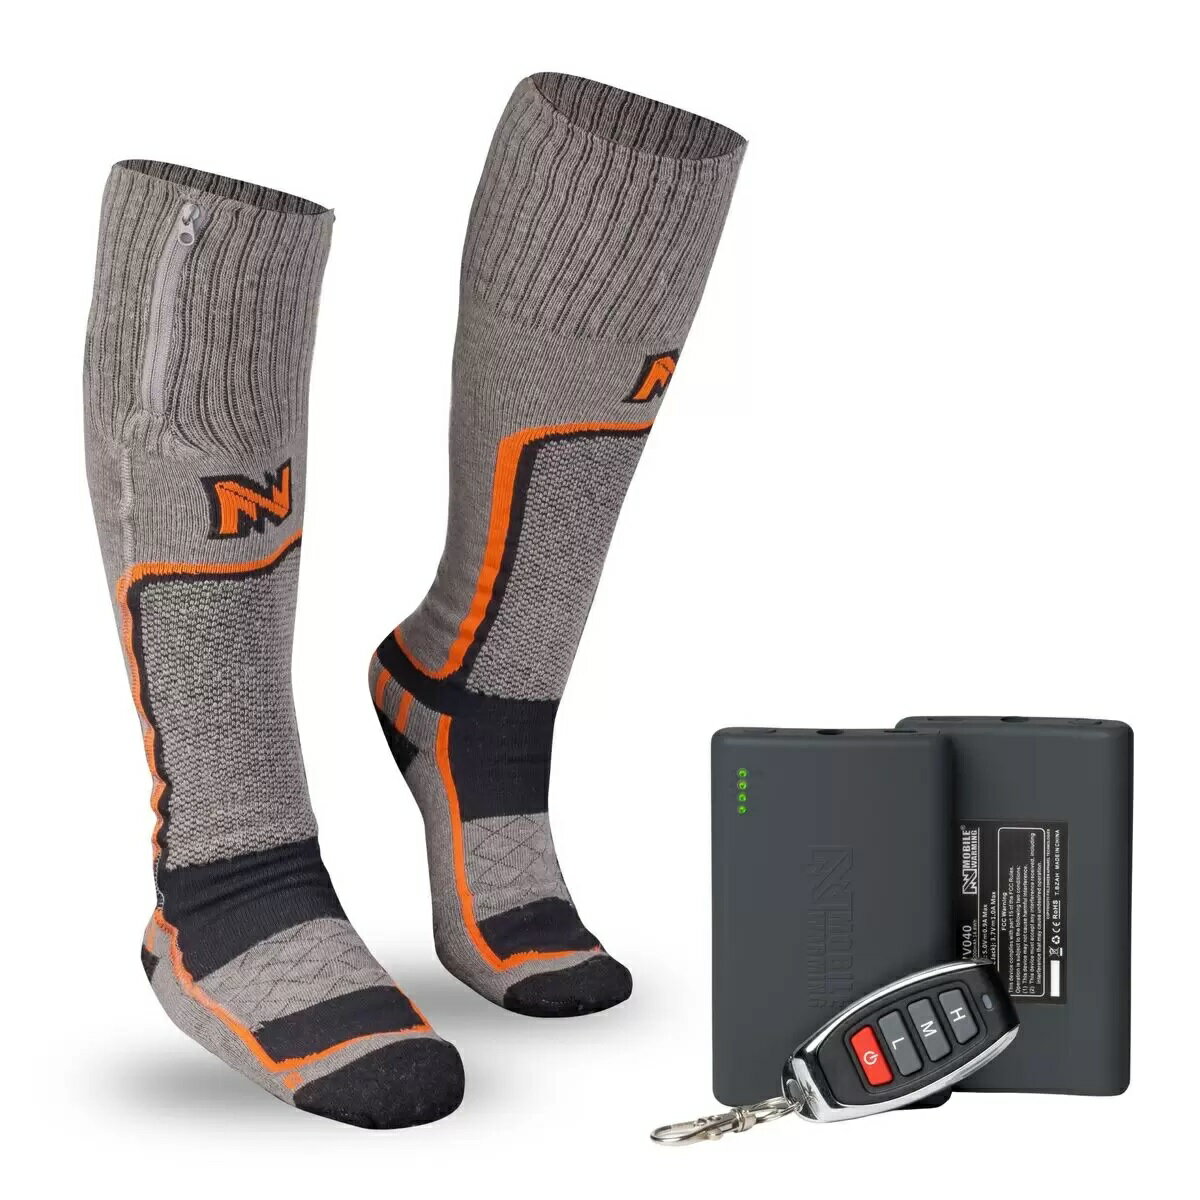 フィールドシアー バッテリー充電式 メリノウール 電熱ソックス サイズM 送料無料 Fieldsheer Rechargeable Mobile Warming Heated Merino Wool Socks コストコ